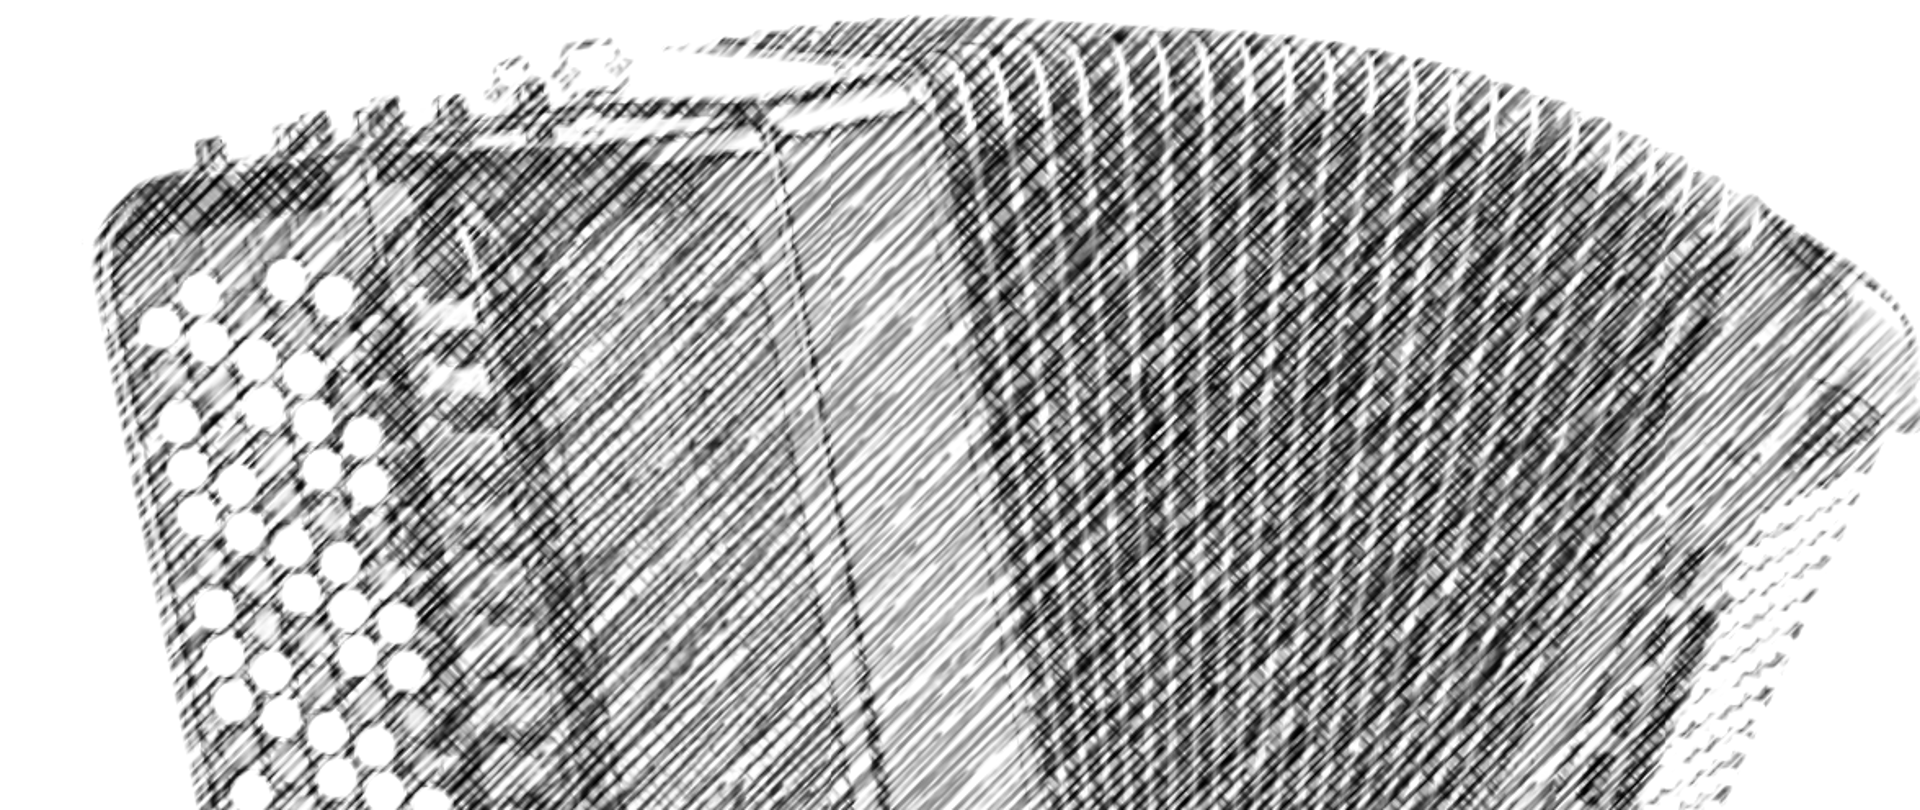 Grafika przedstawia akordeon guzikowy w kolorze szarym stylizowany na rysunek ołówkiem na białym tle